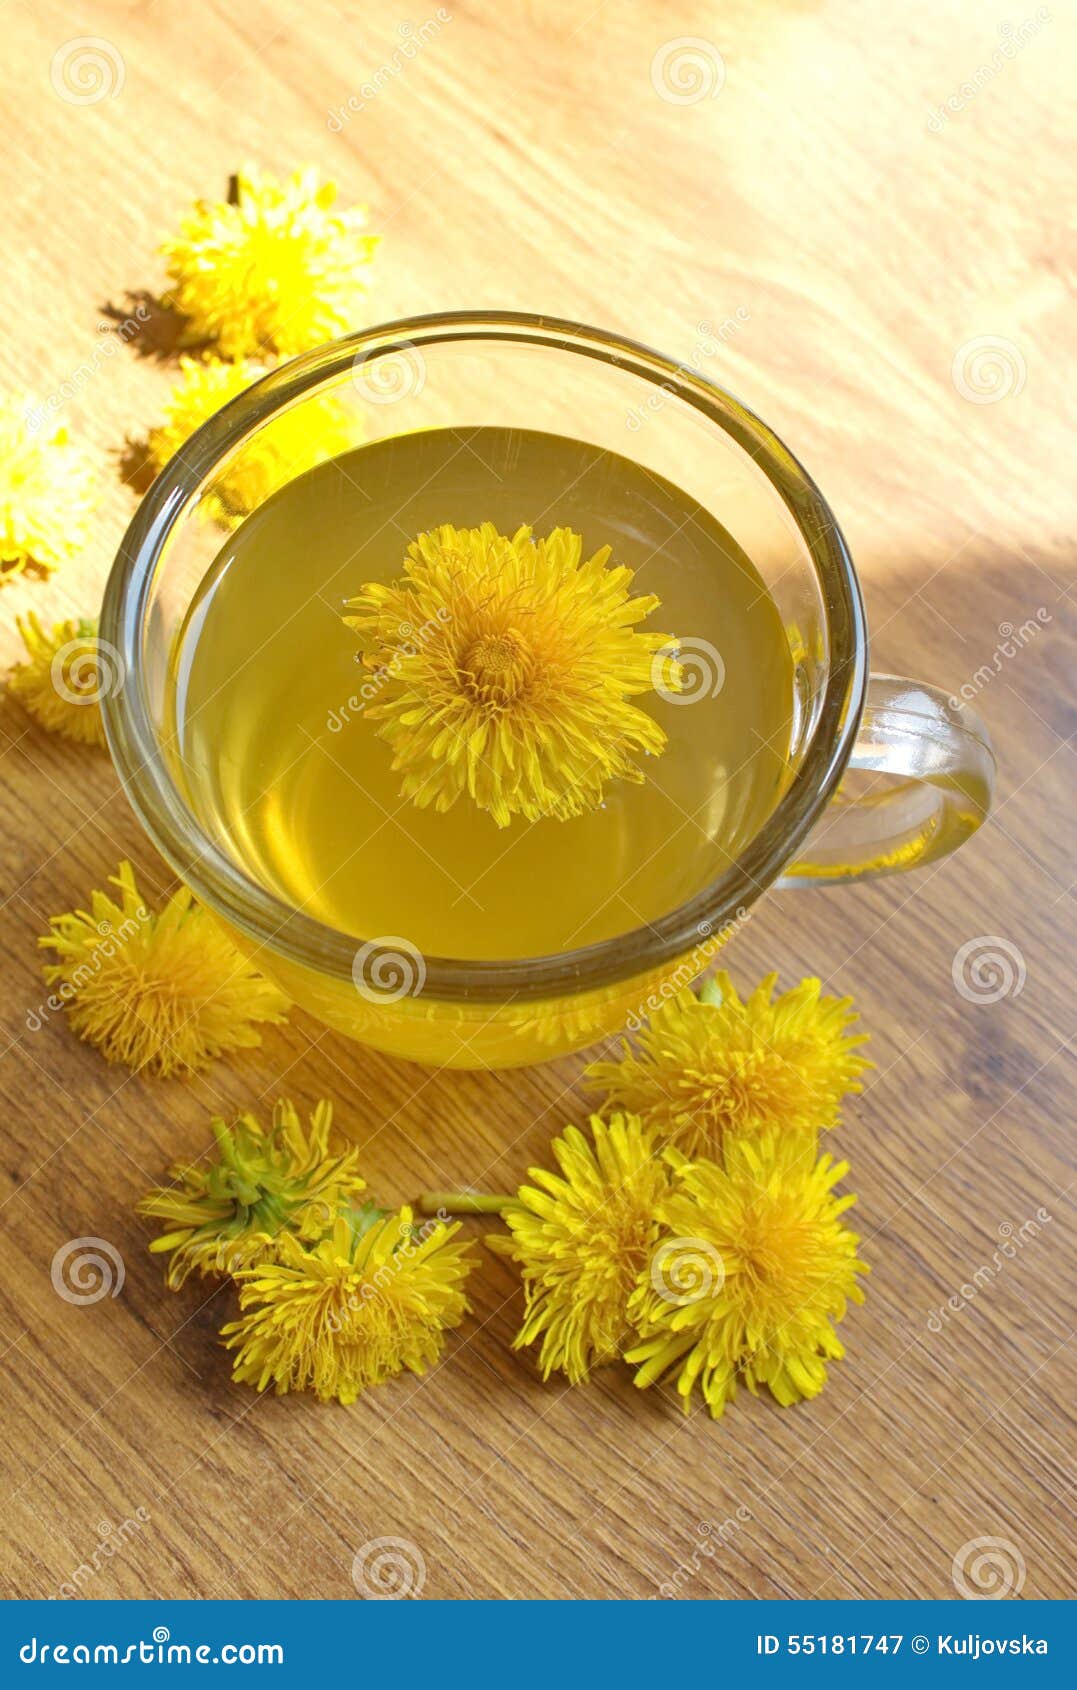 Польза чая из одуванчиков цветков. Чай из одуванчиков. Одуванчик чай. Сушка цветов одуванчика. Одуванчики к чаю.